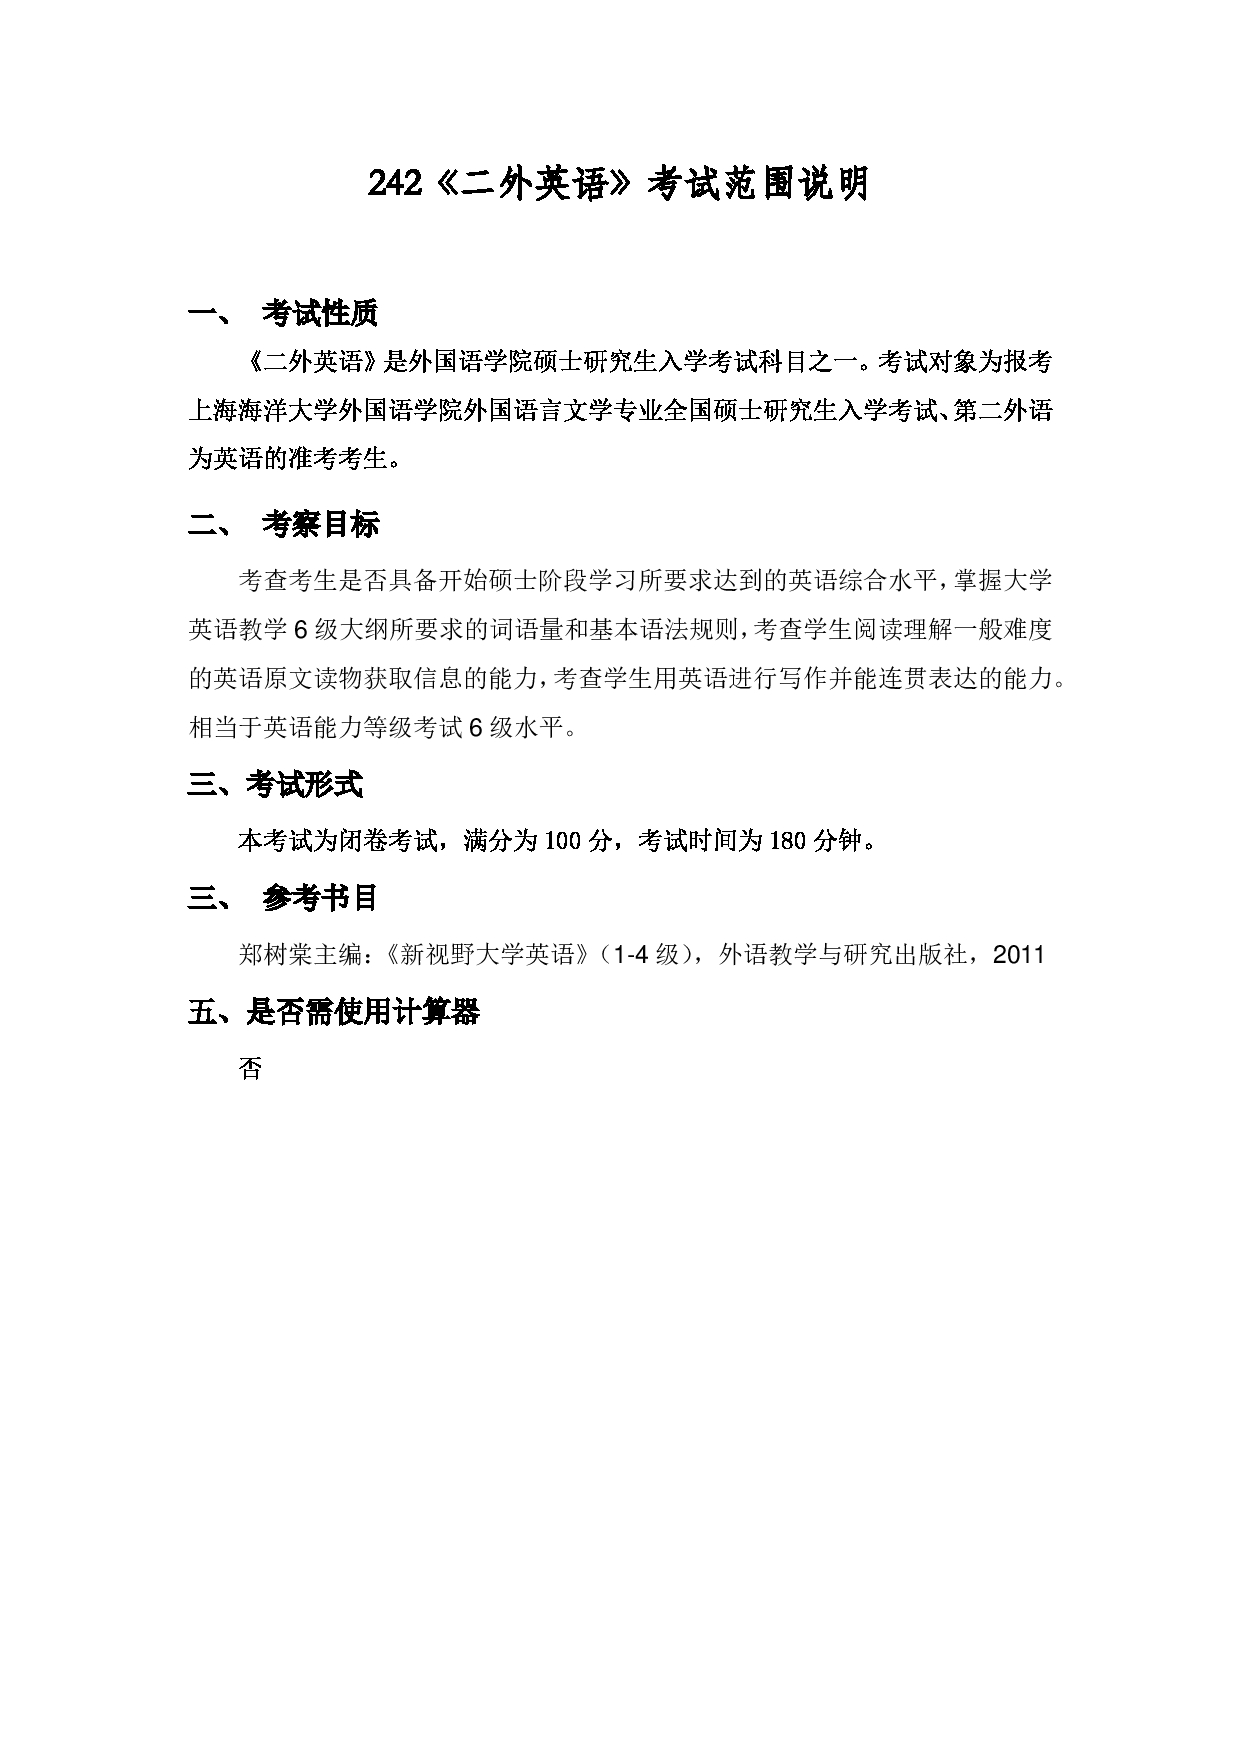 2022考研大纲：上海海洋大学2022年考研自命题科目 242二外英语 考试大纲第1页